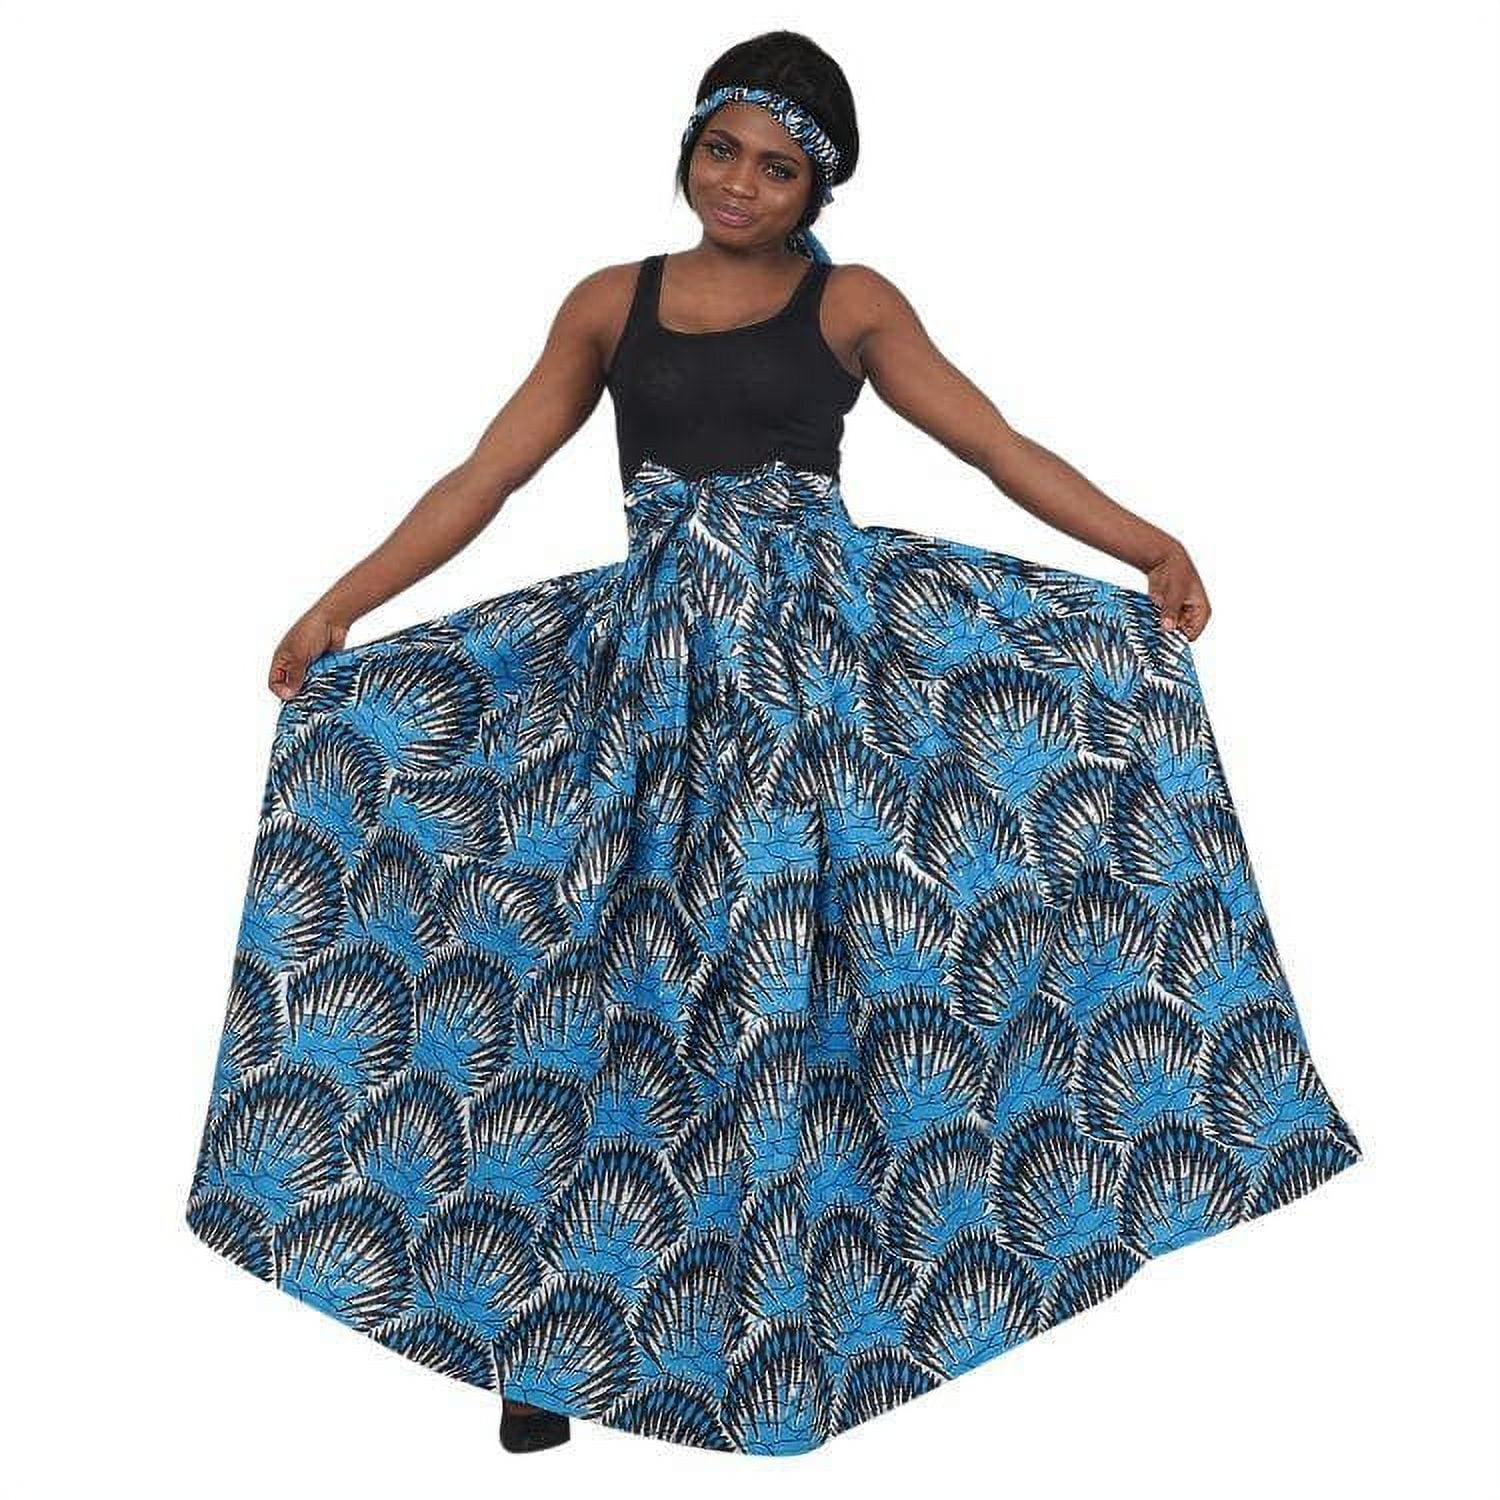 Advance Apparels Ocean Blue African Print Long Maxi Skirt Elastic Waist ...